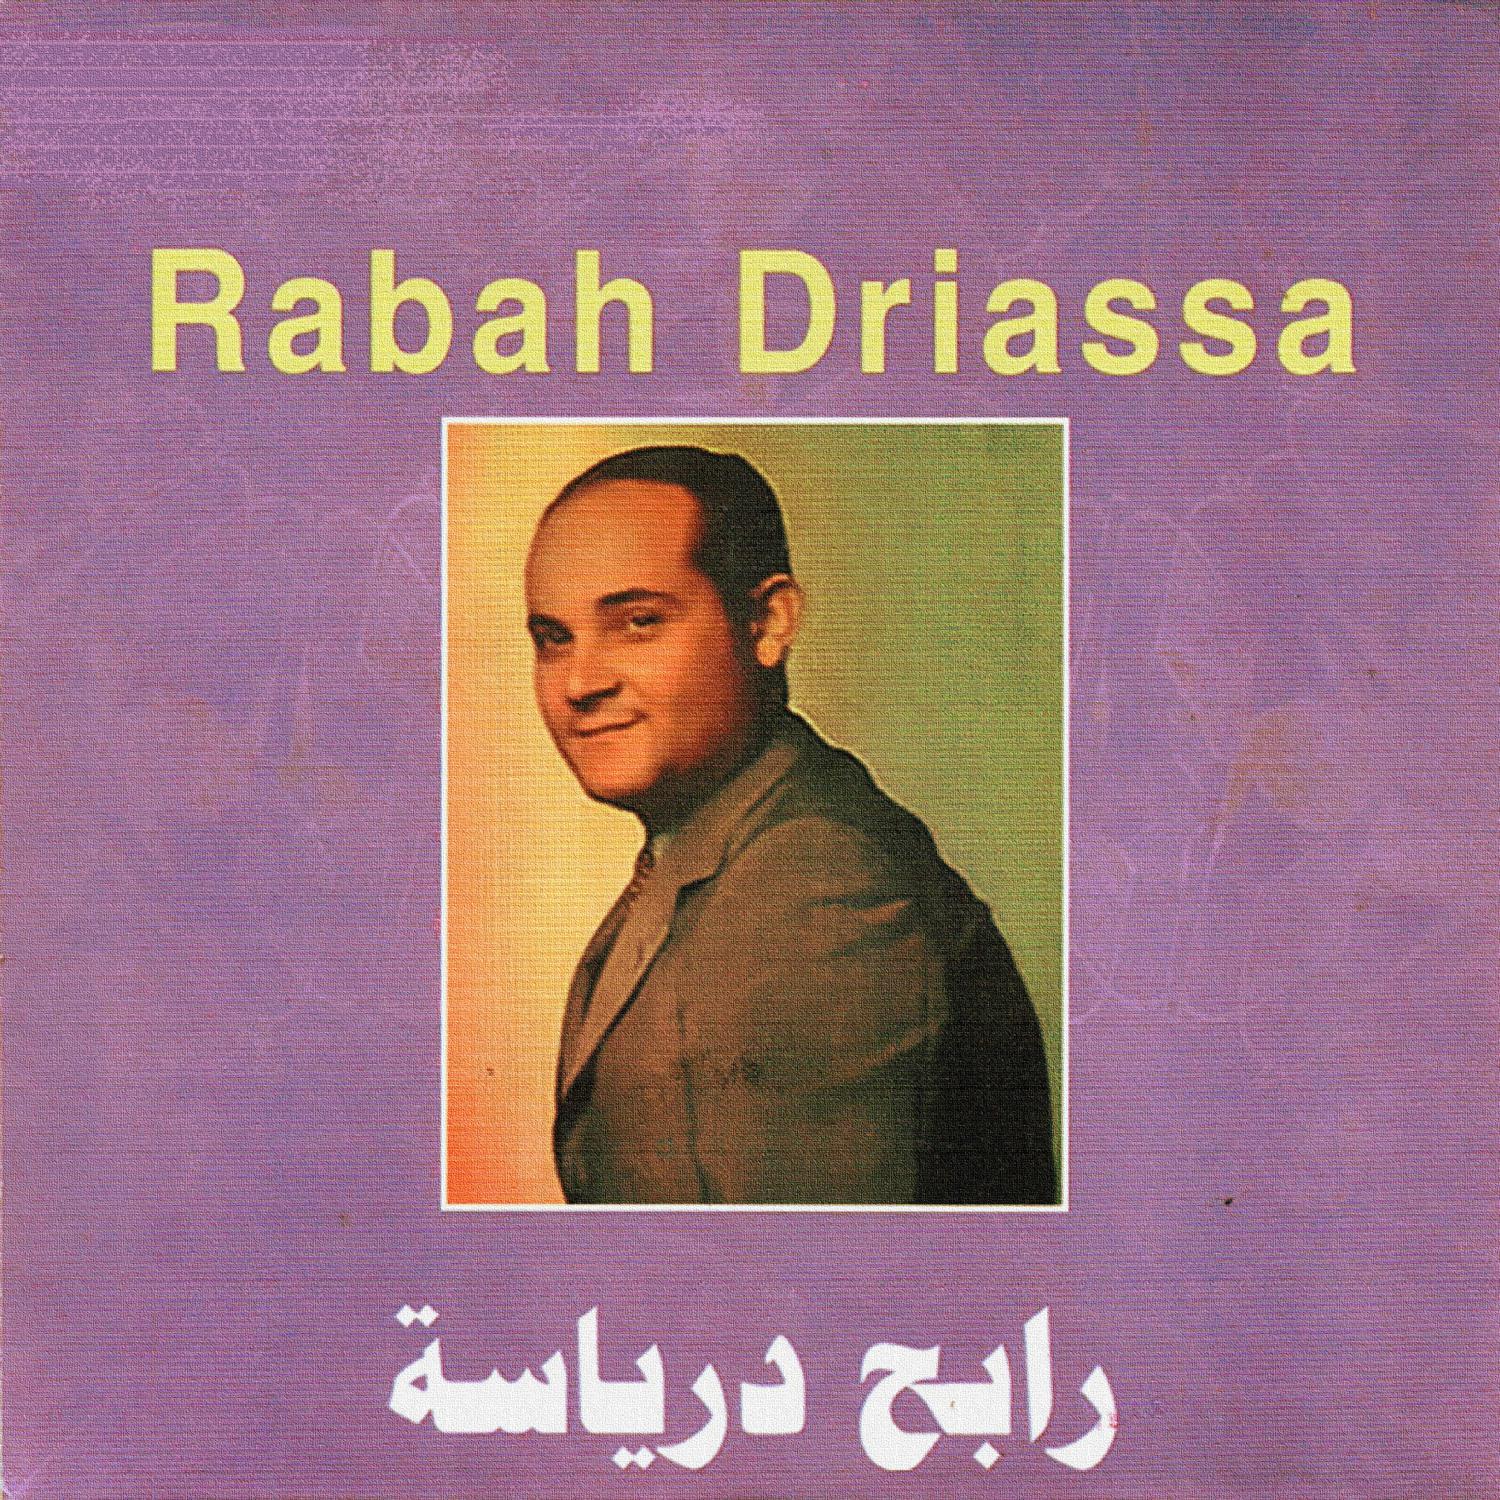 Rabah Driassa - Khams enndjoum